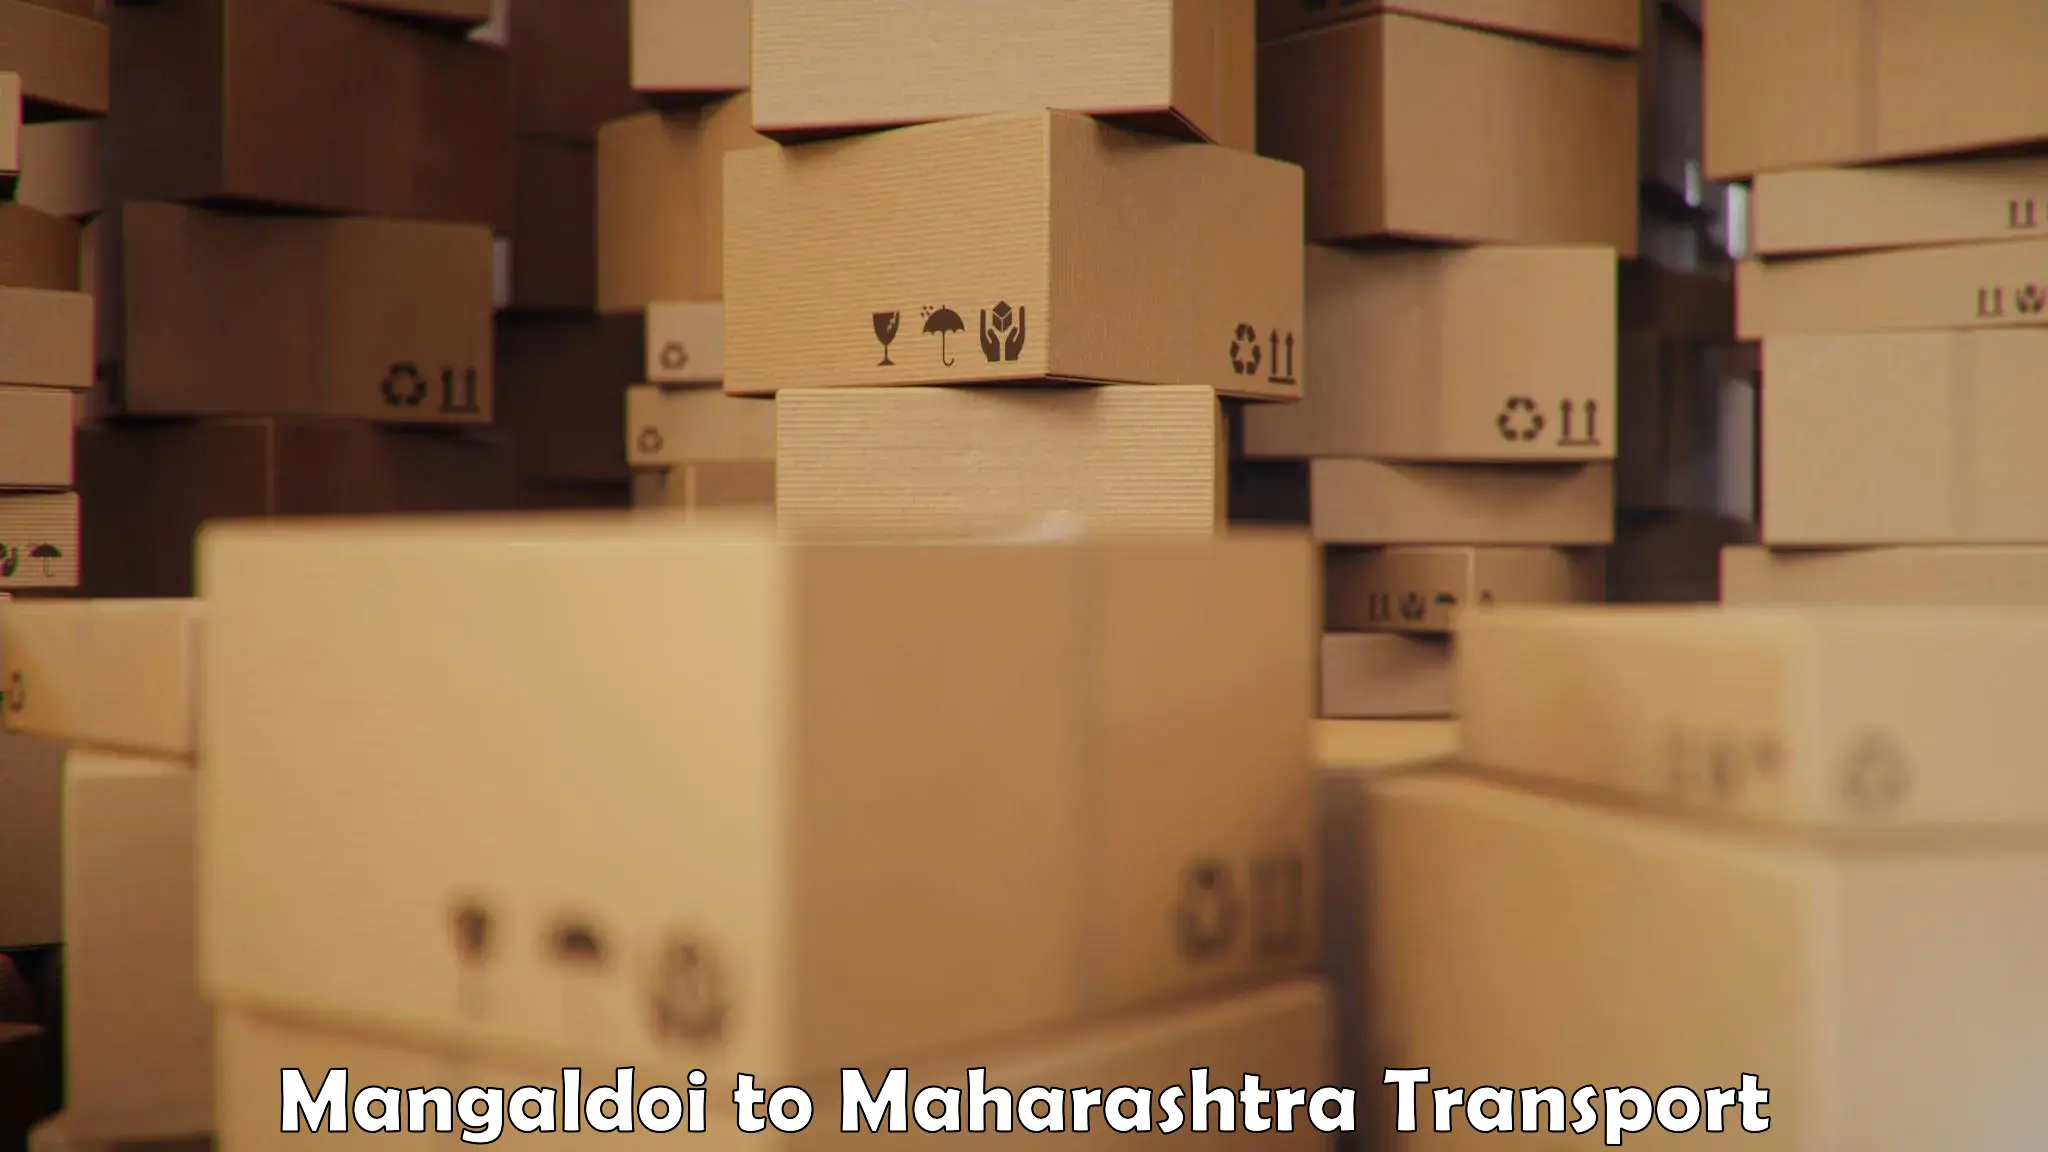 Container transport service in Mangaldoi to Mumbai Port